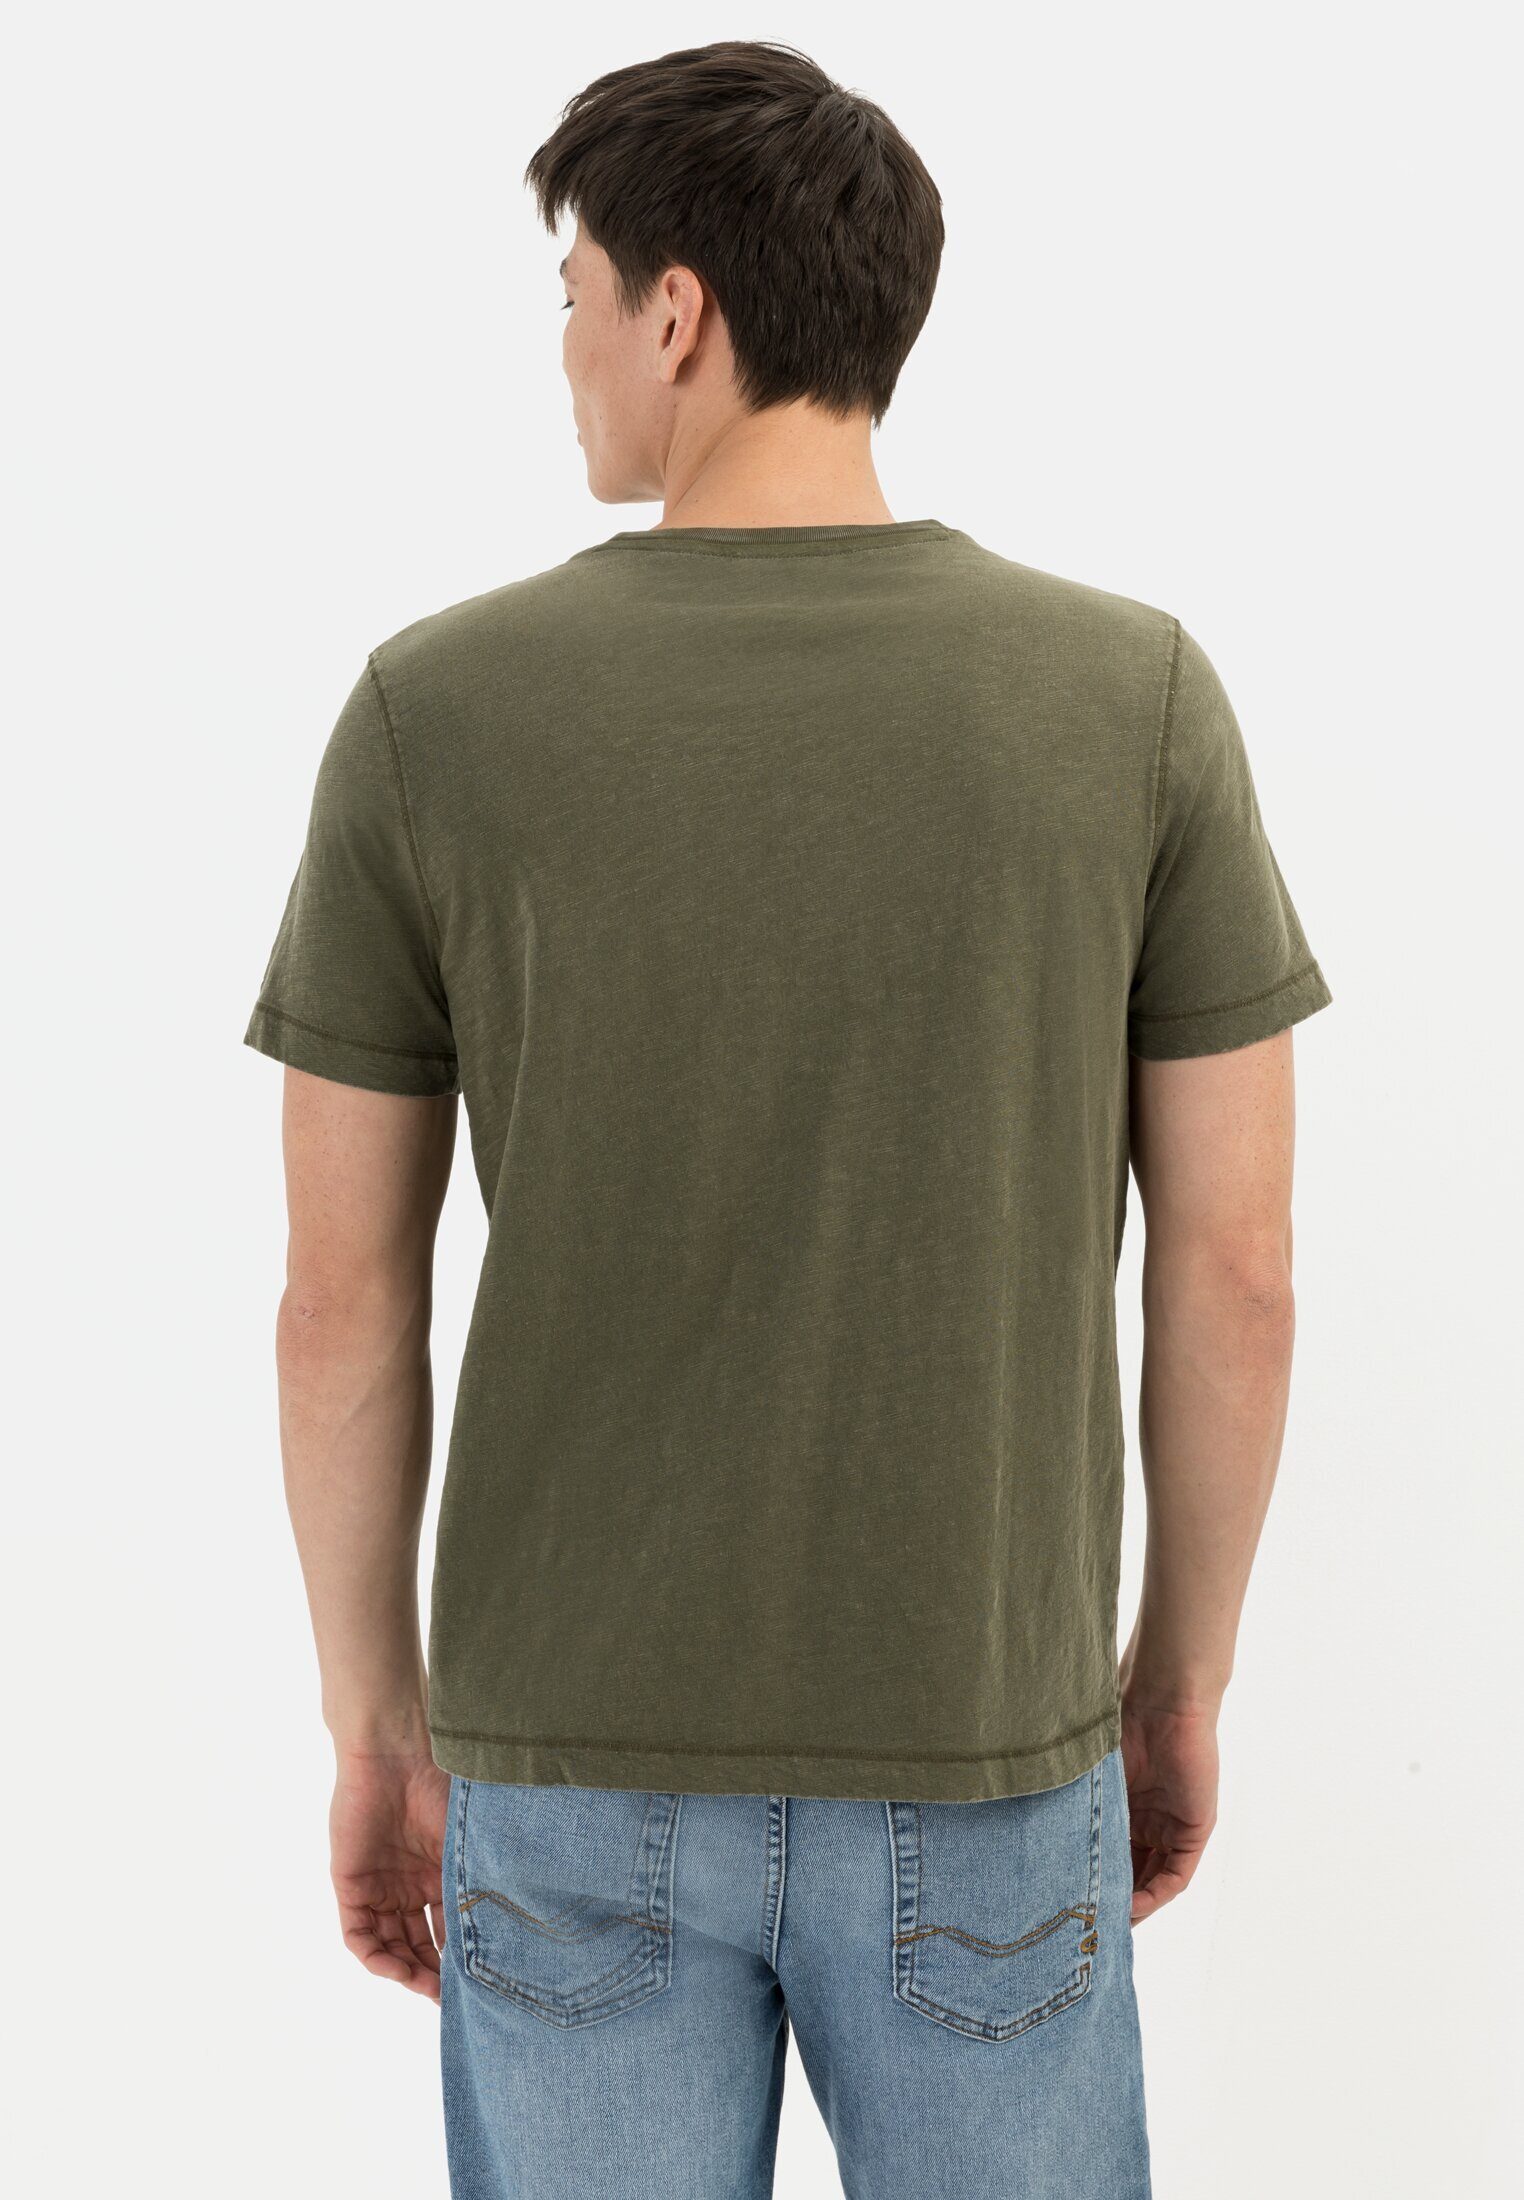 Herren Shirts camel active Print-Shirt Kurzarm T-Shirt aus Organic Cotton